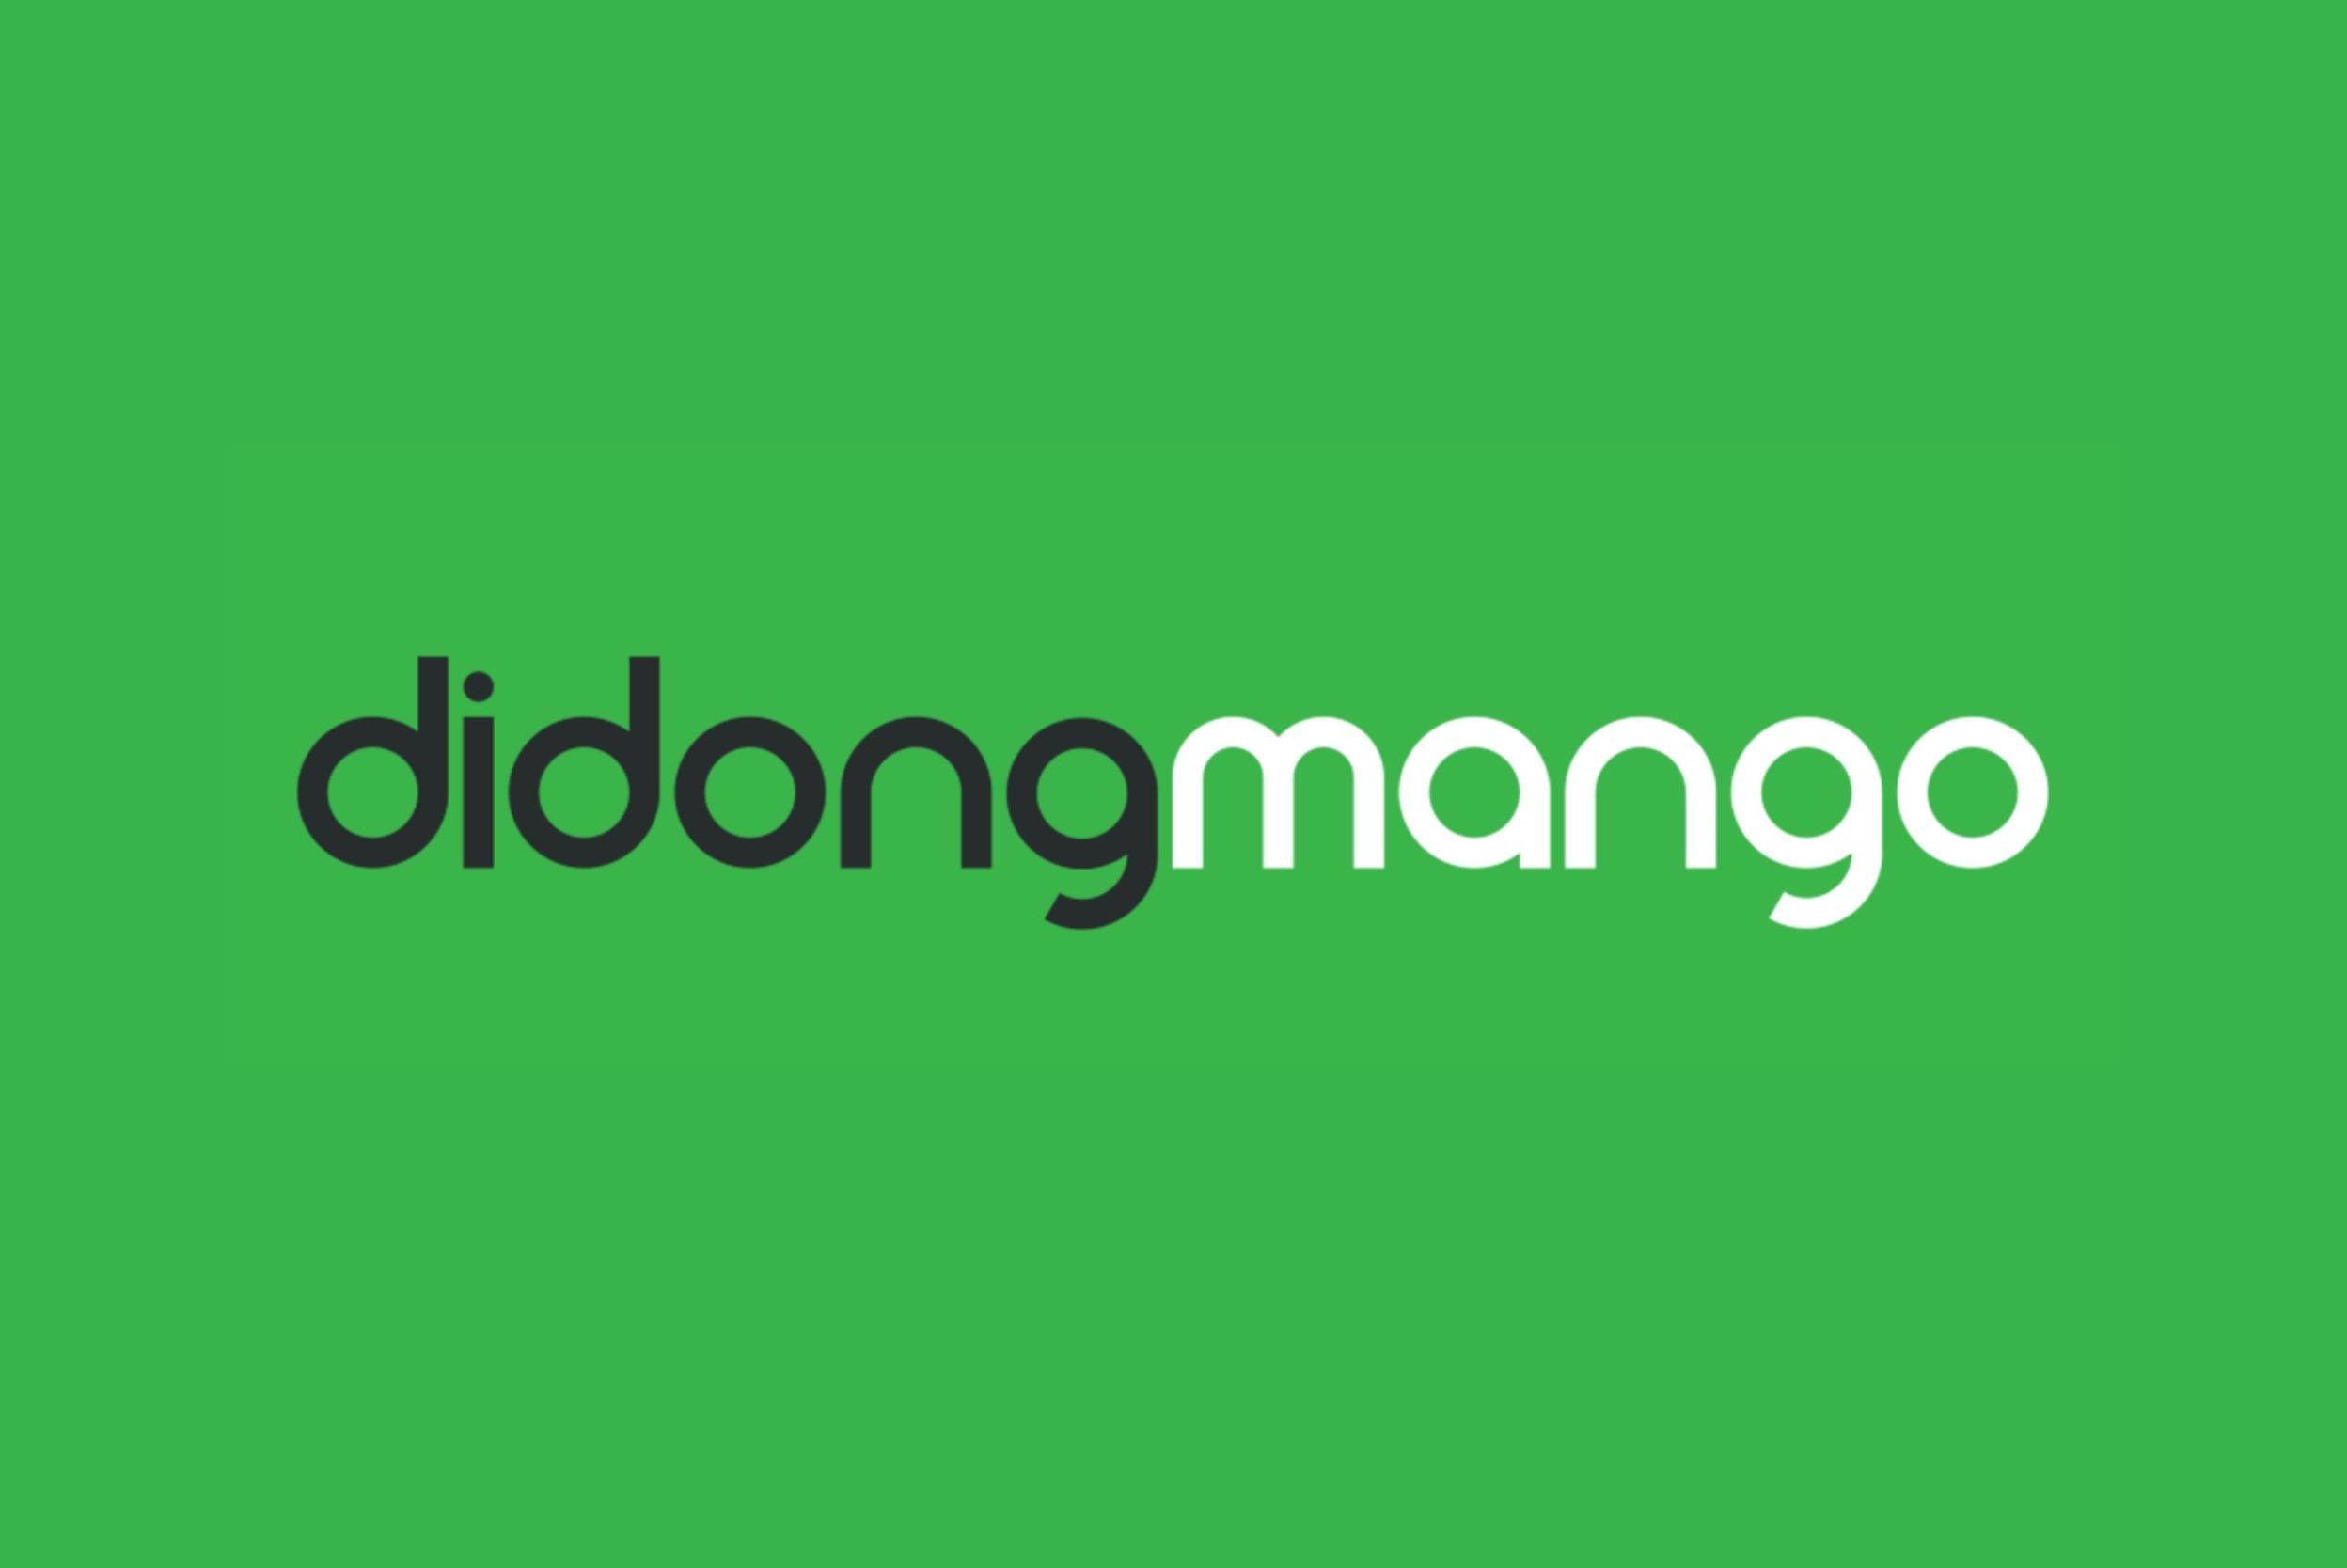 di-dong-mango-logo.jpg